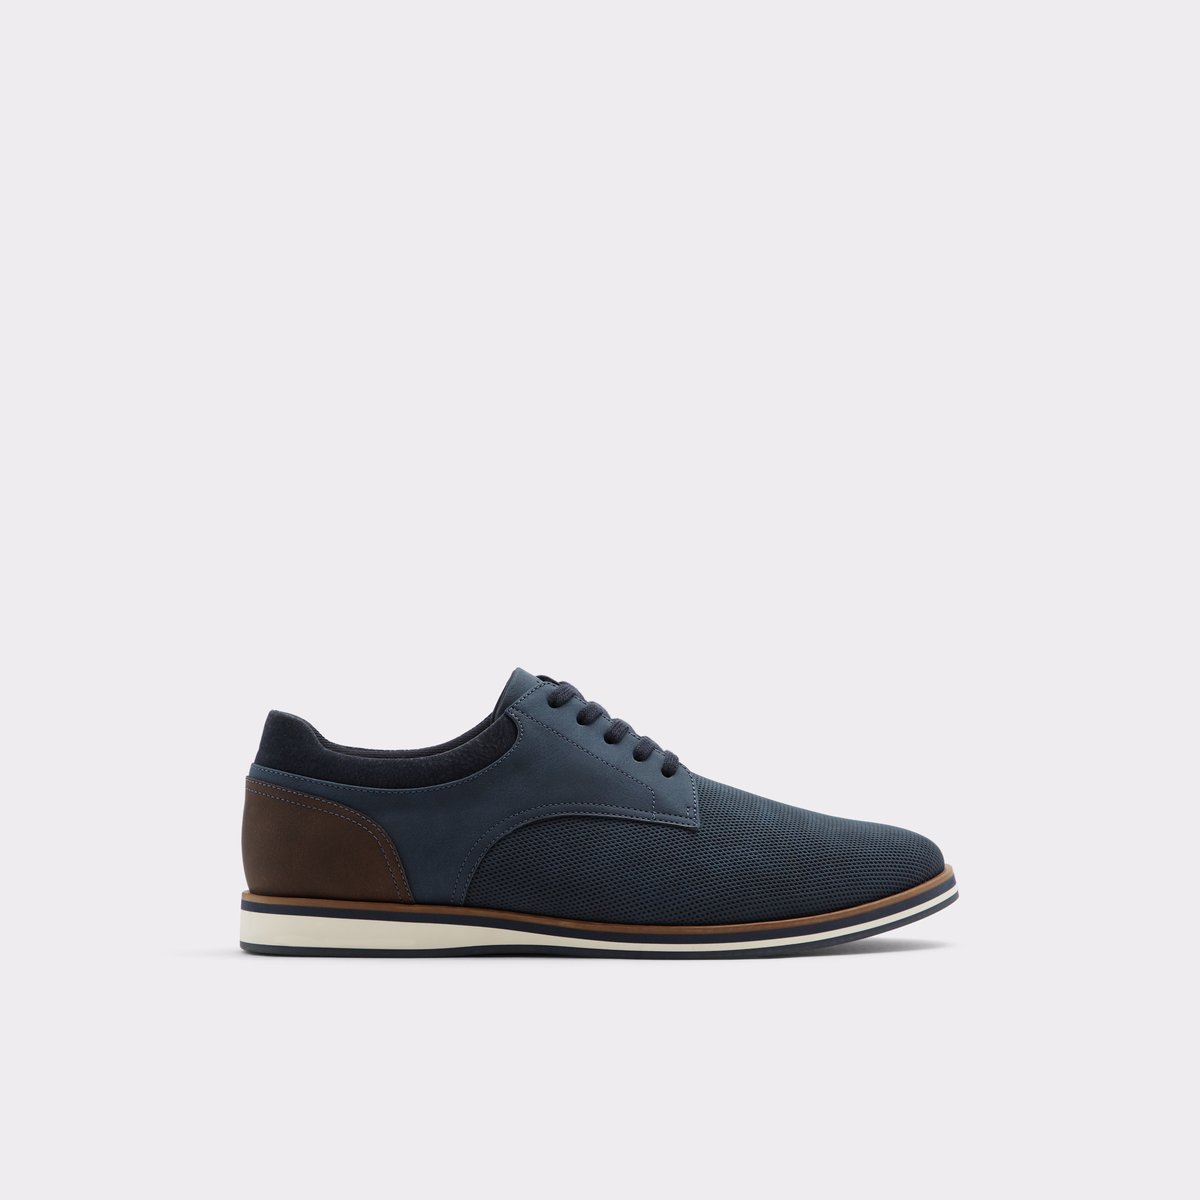 aldo shoes navy blue